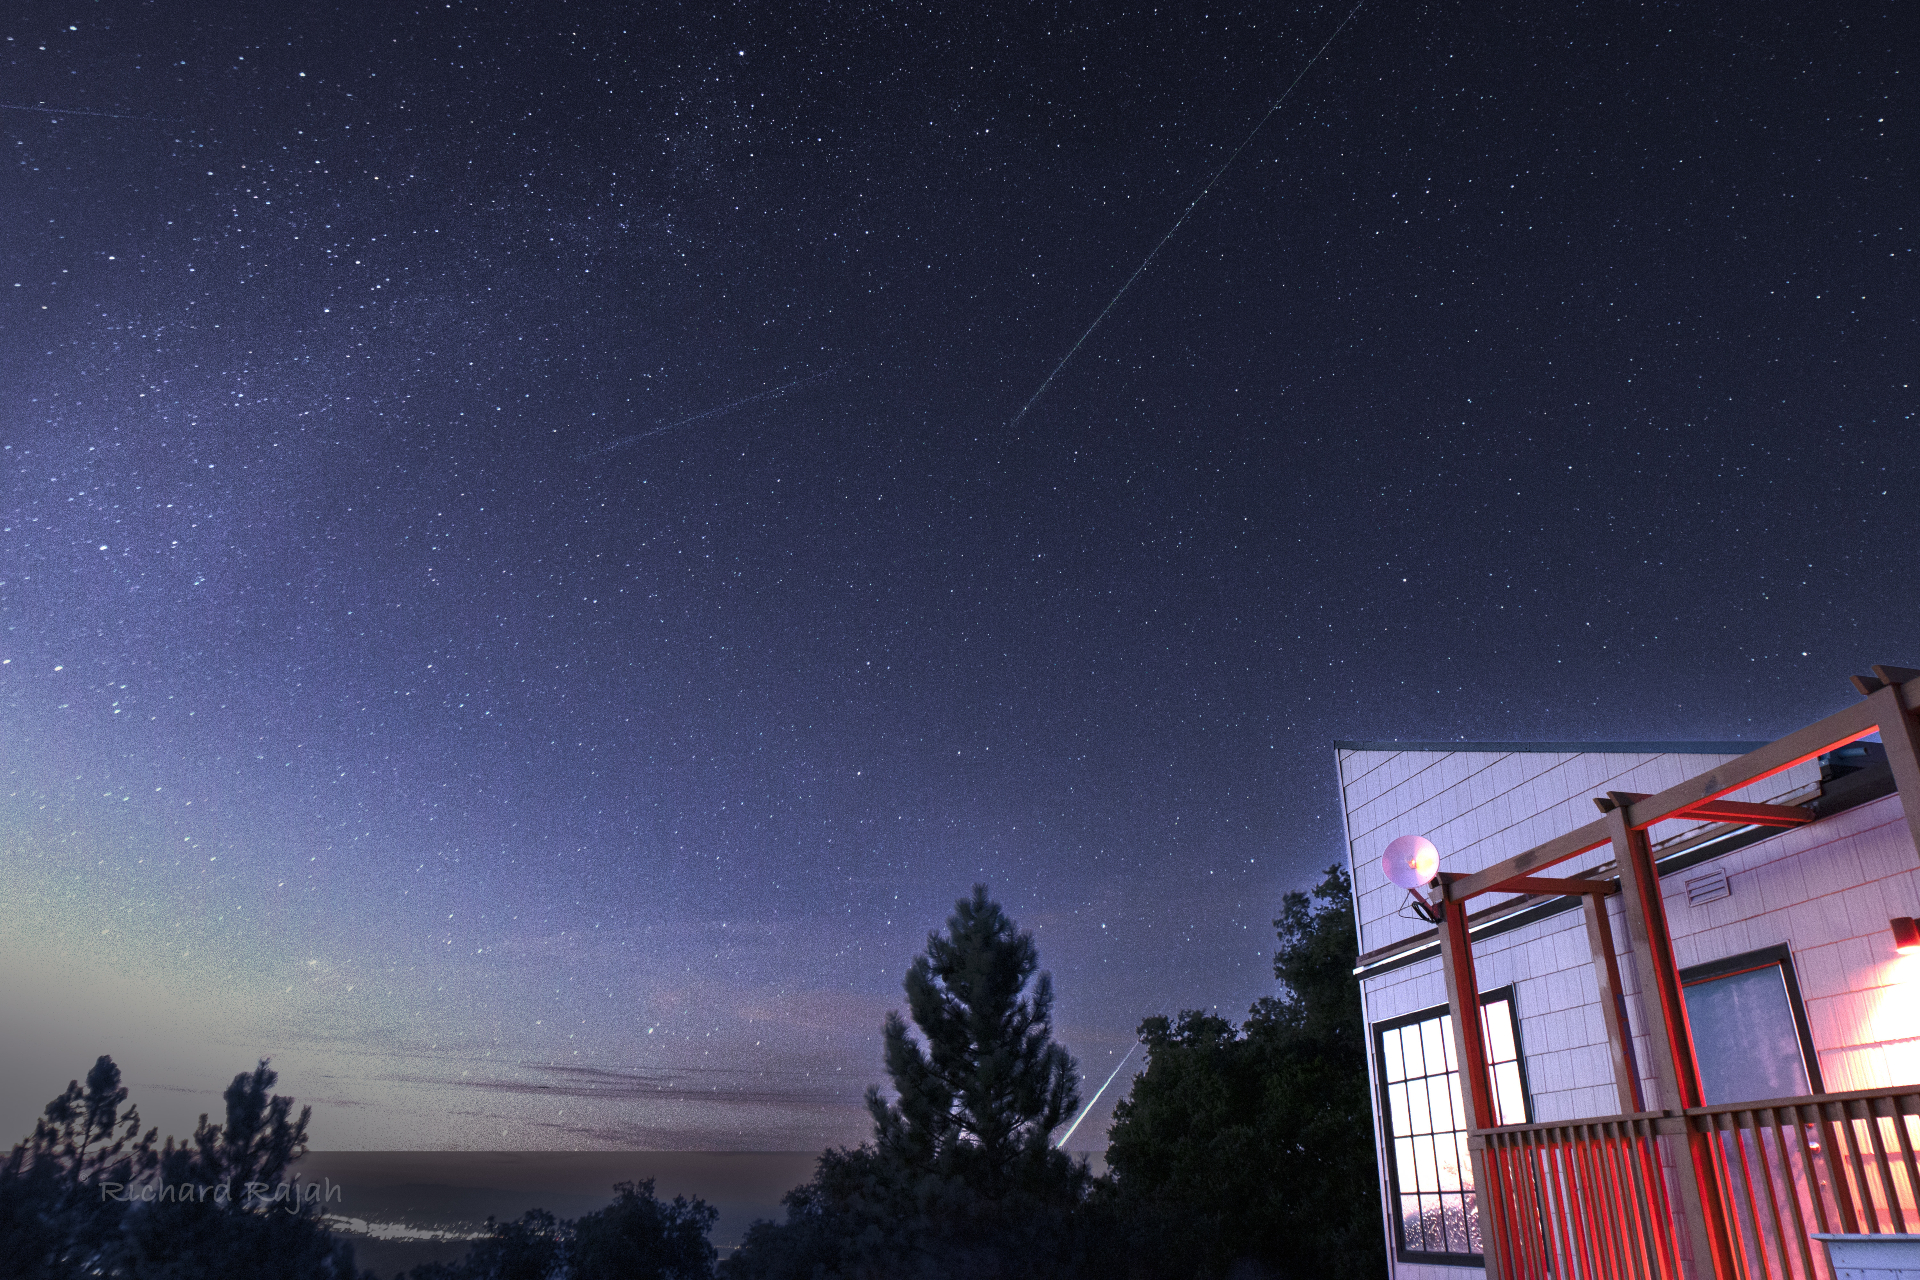 Meteoros riscam o céu e uma bola de fogo brilhante atrás das árvores na parte inferior da imagem.  Um edifício iluminado está à direita da foto.